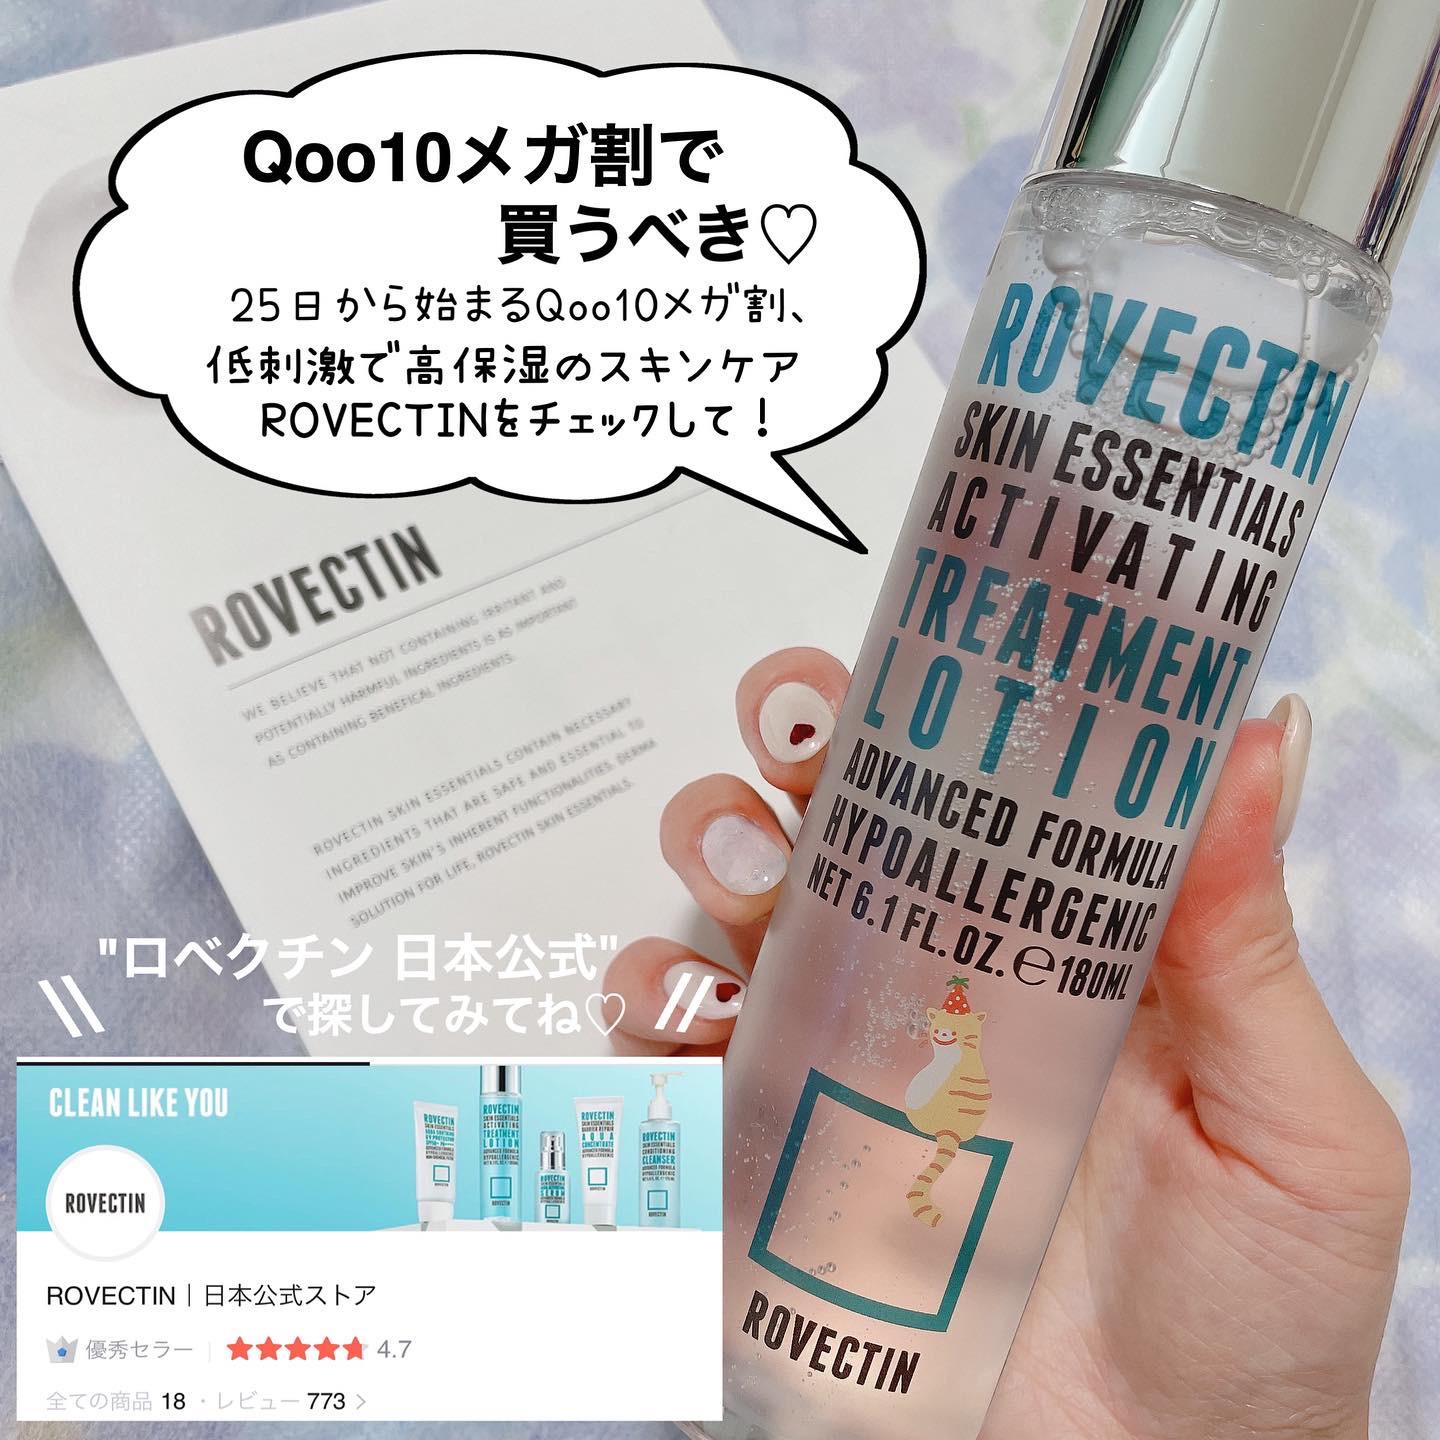 Qoo10メガ割おすすめ 韓国美容アプリ高評価 ロベクチン 時空の歪み 韓国コスメ図鑑が投稿したフォトブック Lemon8